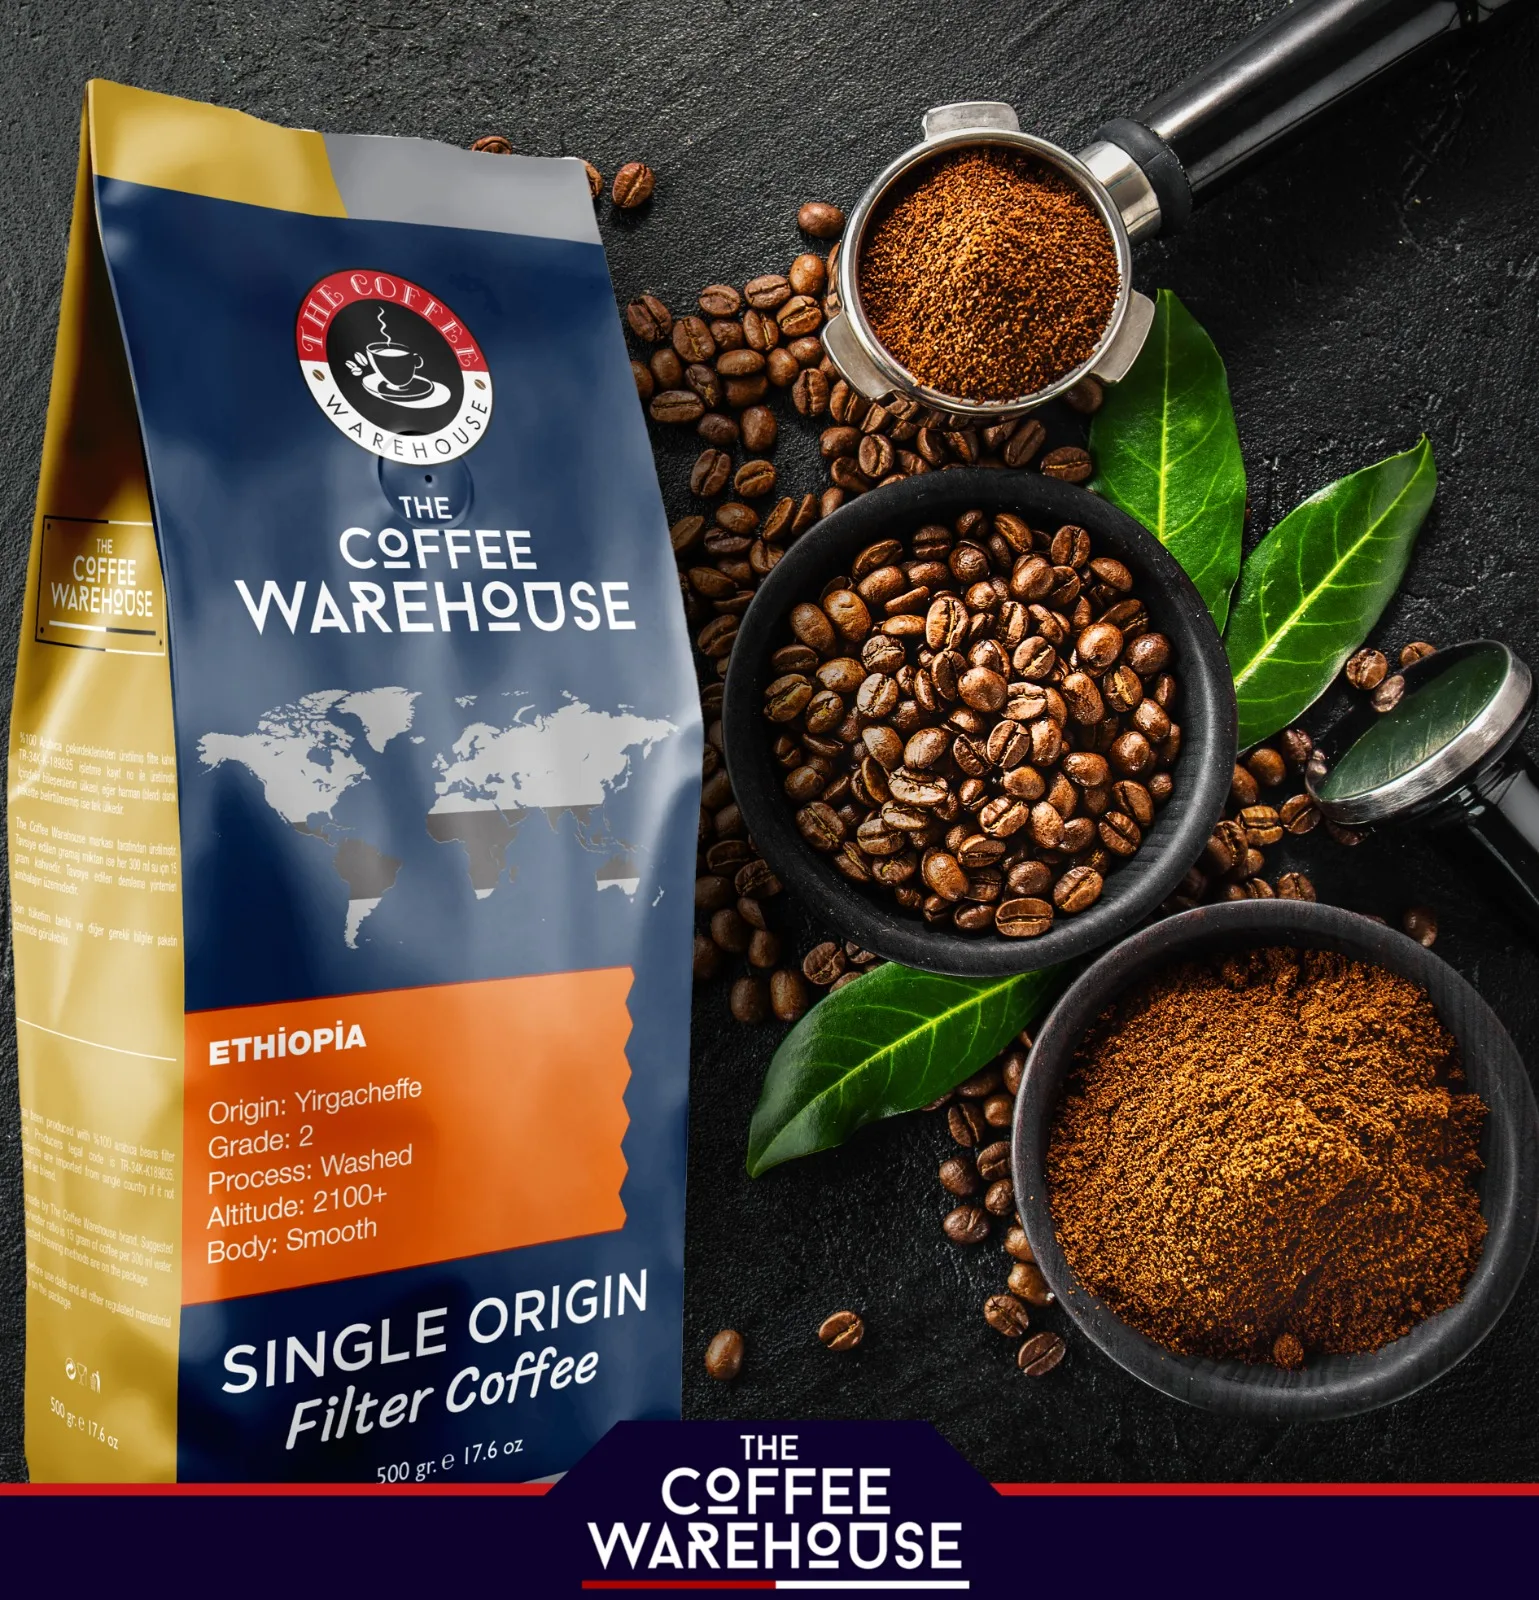 Кофе Арабика, одноместное производство Эфиопии, Yirgacheffe, высококачественный молотый кофе